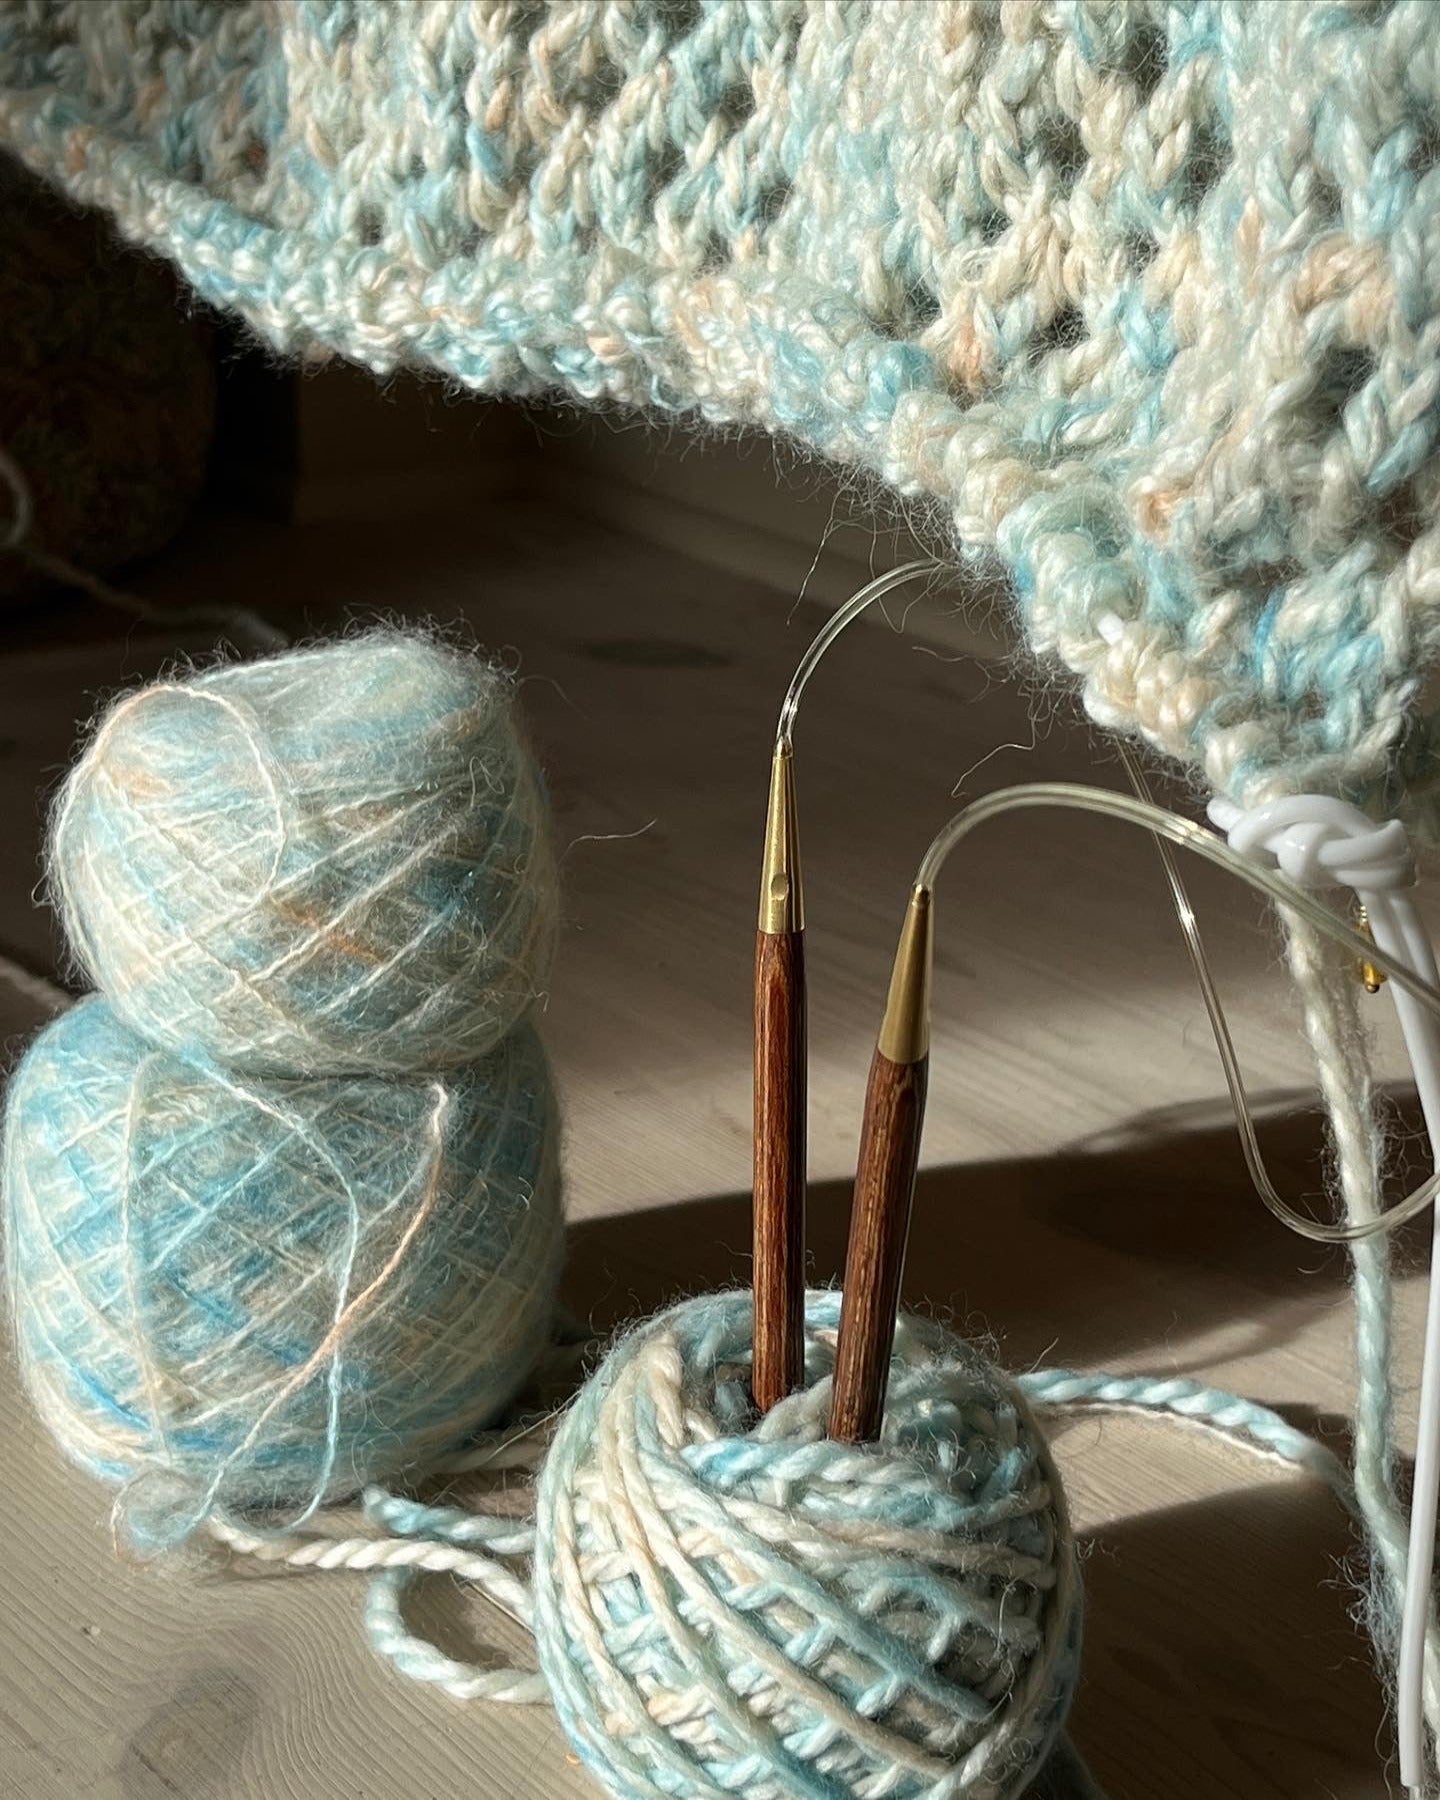 Kokomo Chunky Sweater English Popknit knitting pattern